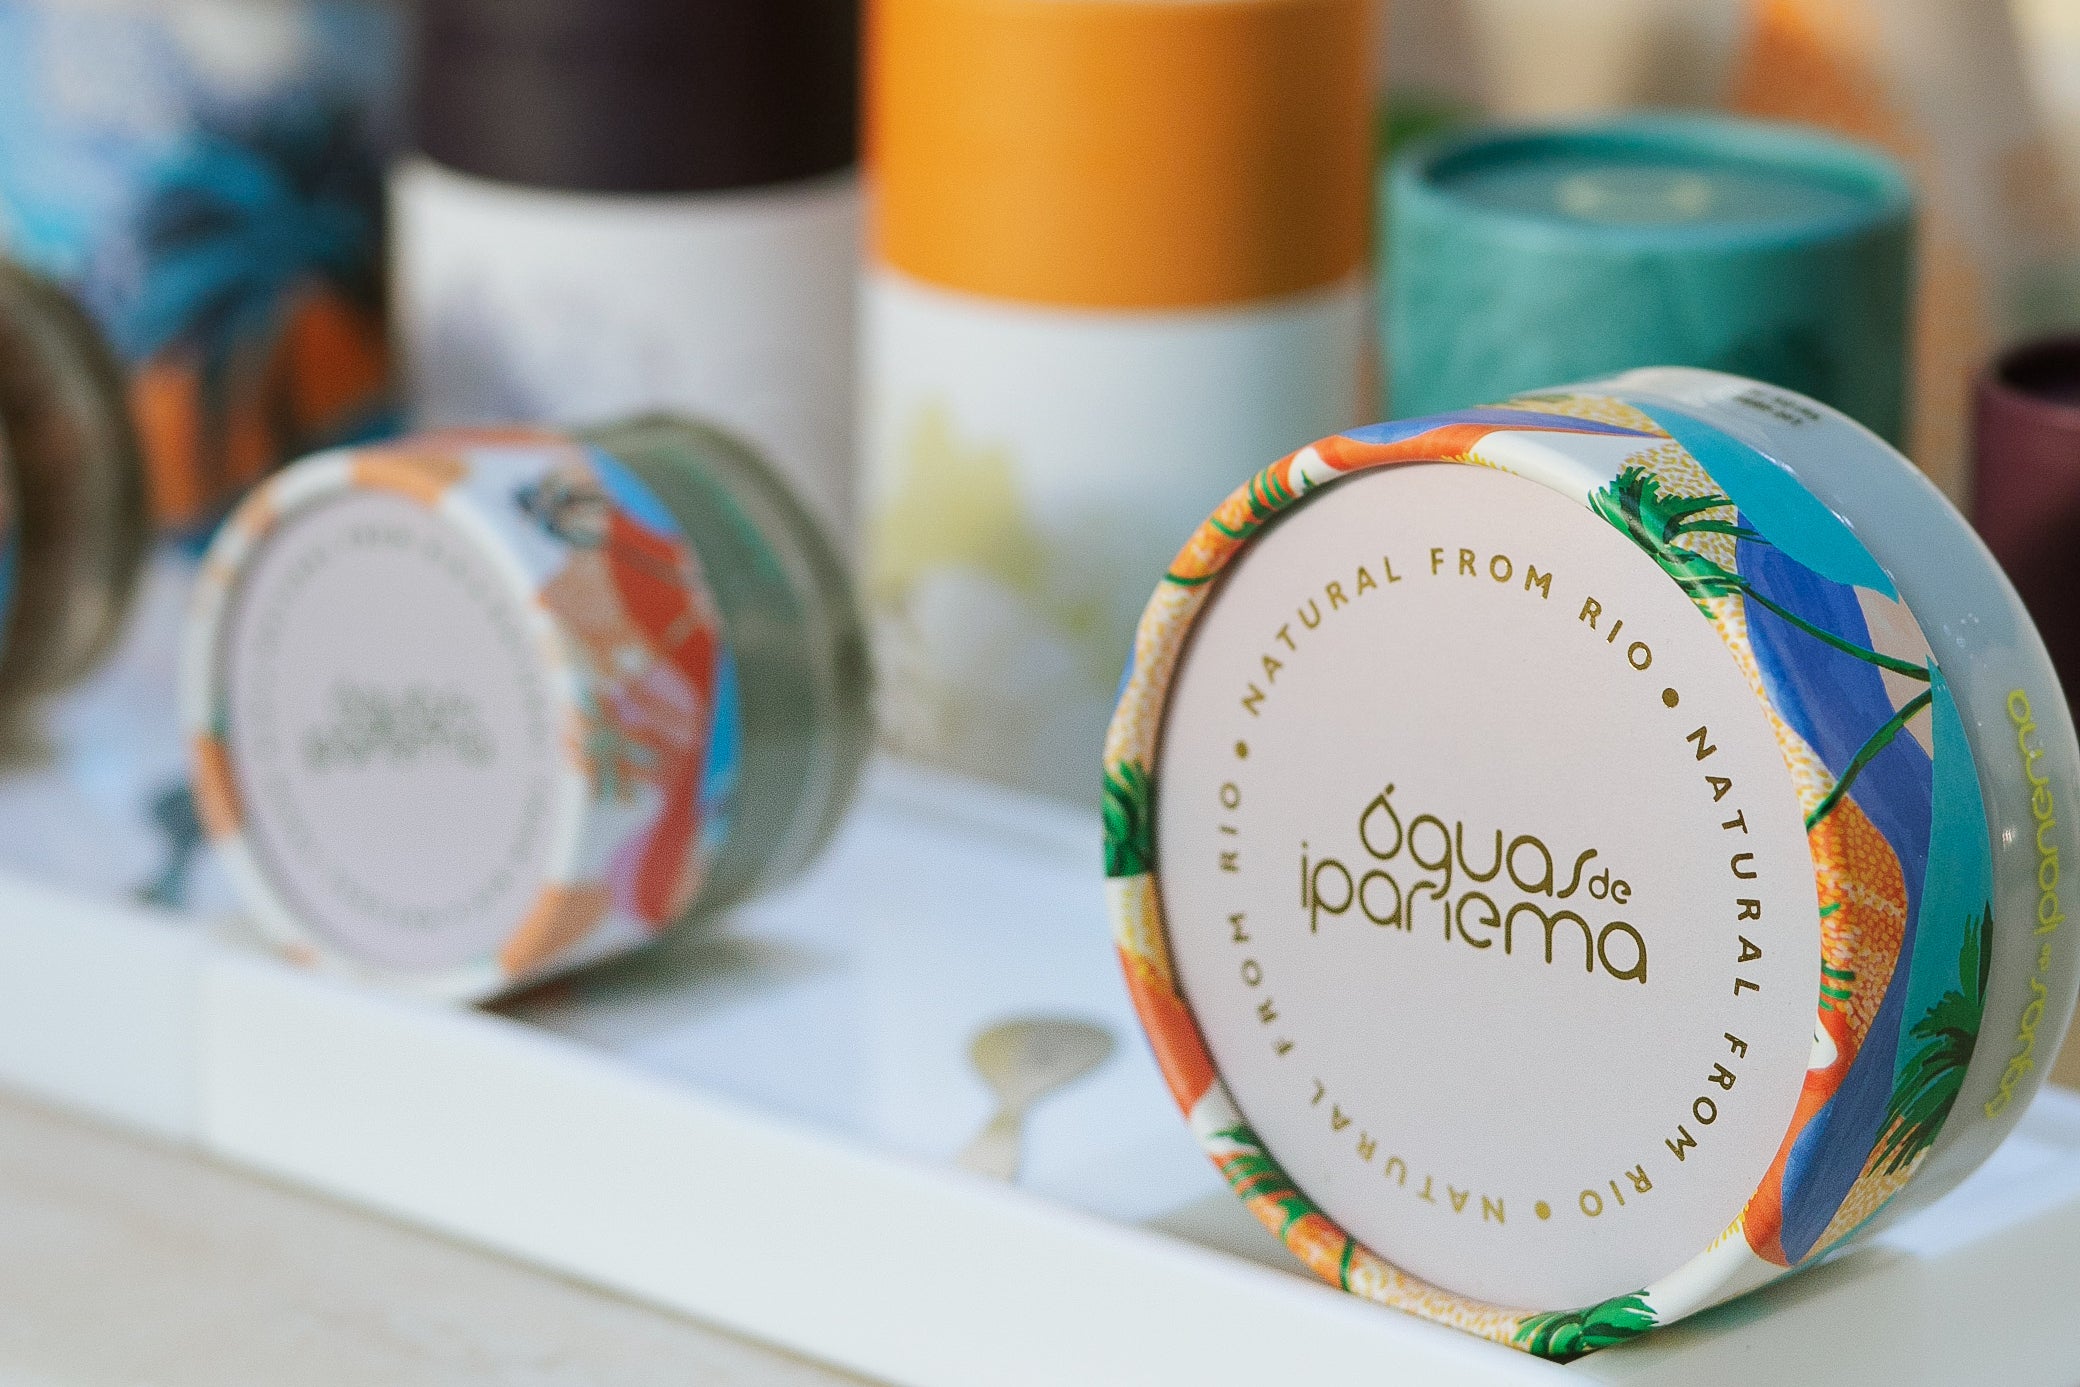 Marca de cosméticos e skincare 100% carioca: Conheça mais sobre Águas de Ipanema